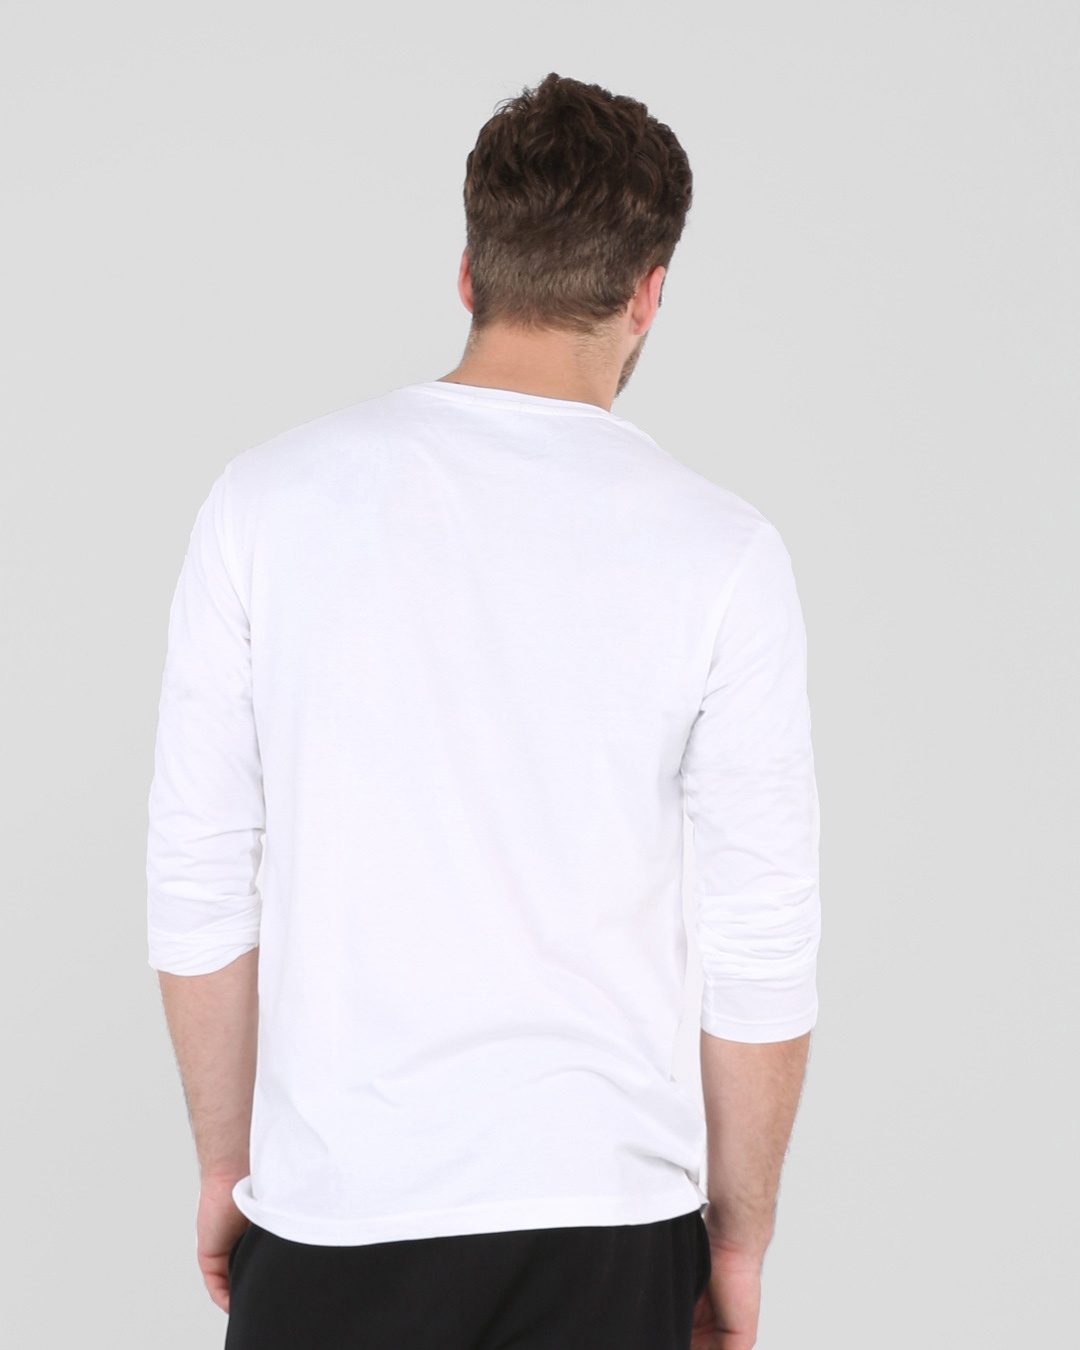 Buy Escape to outdoors Full Sleeve T-Shirt White for Men white Online ...